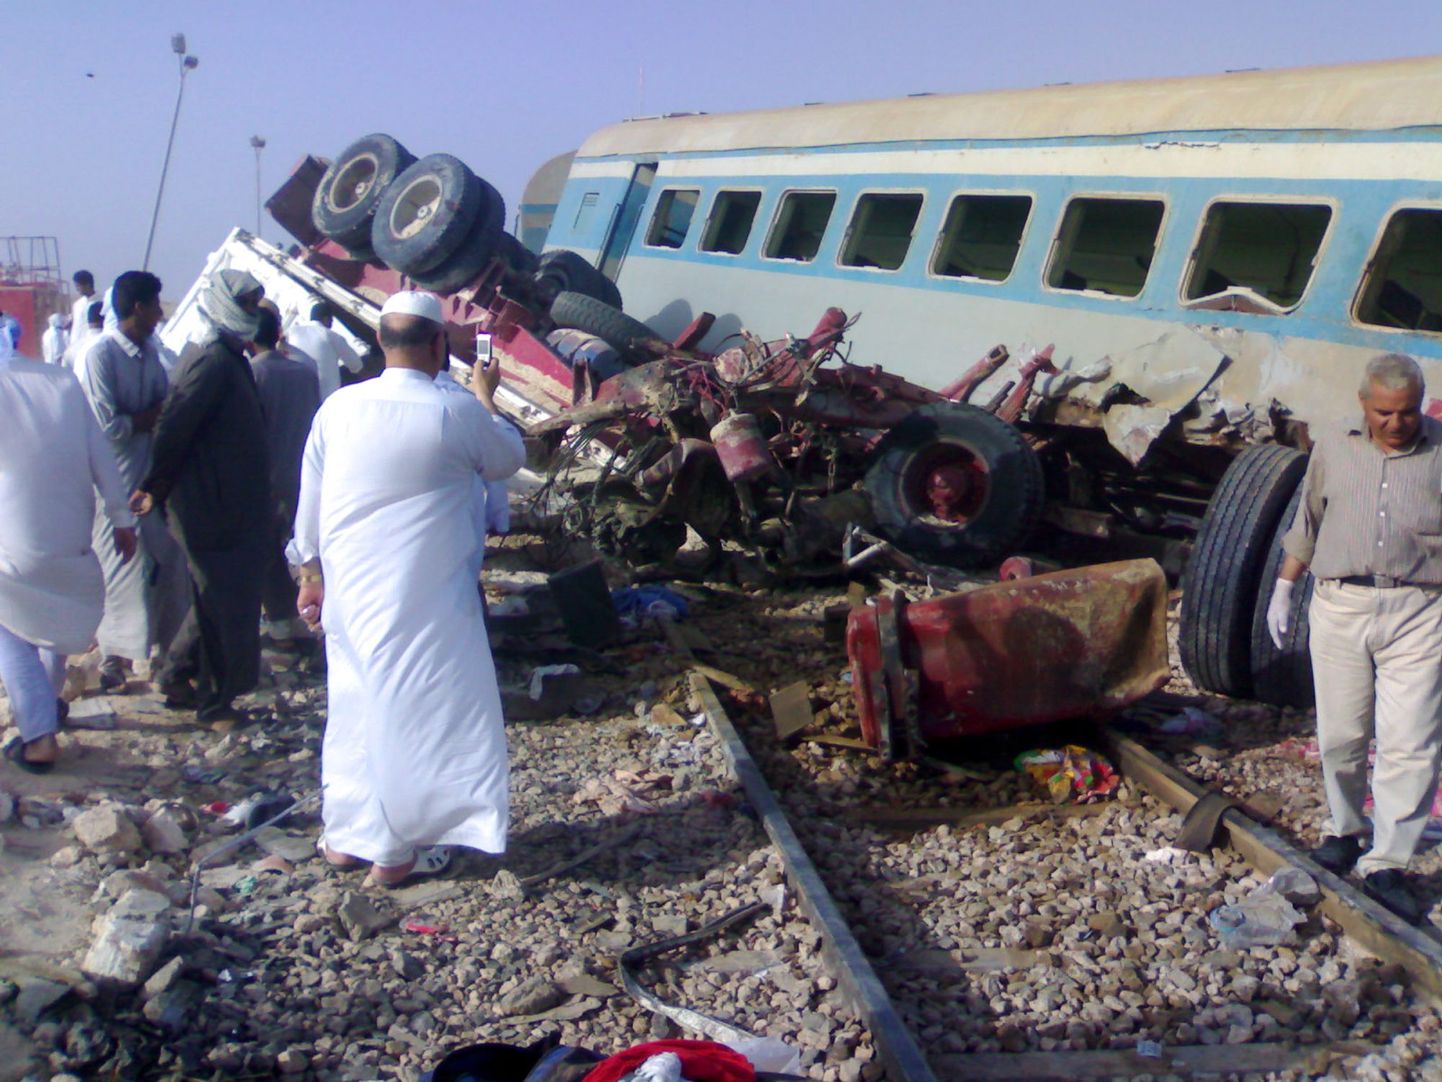 Egiptlased reisirongi juures, mis rammis raudteeülesõidul ette jäänud autosid ning kokkupõrke tagajärjel paiskus rööbastelt väljad, tappes ja vigastades kümneid inimesi.